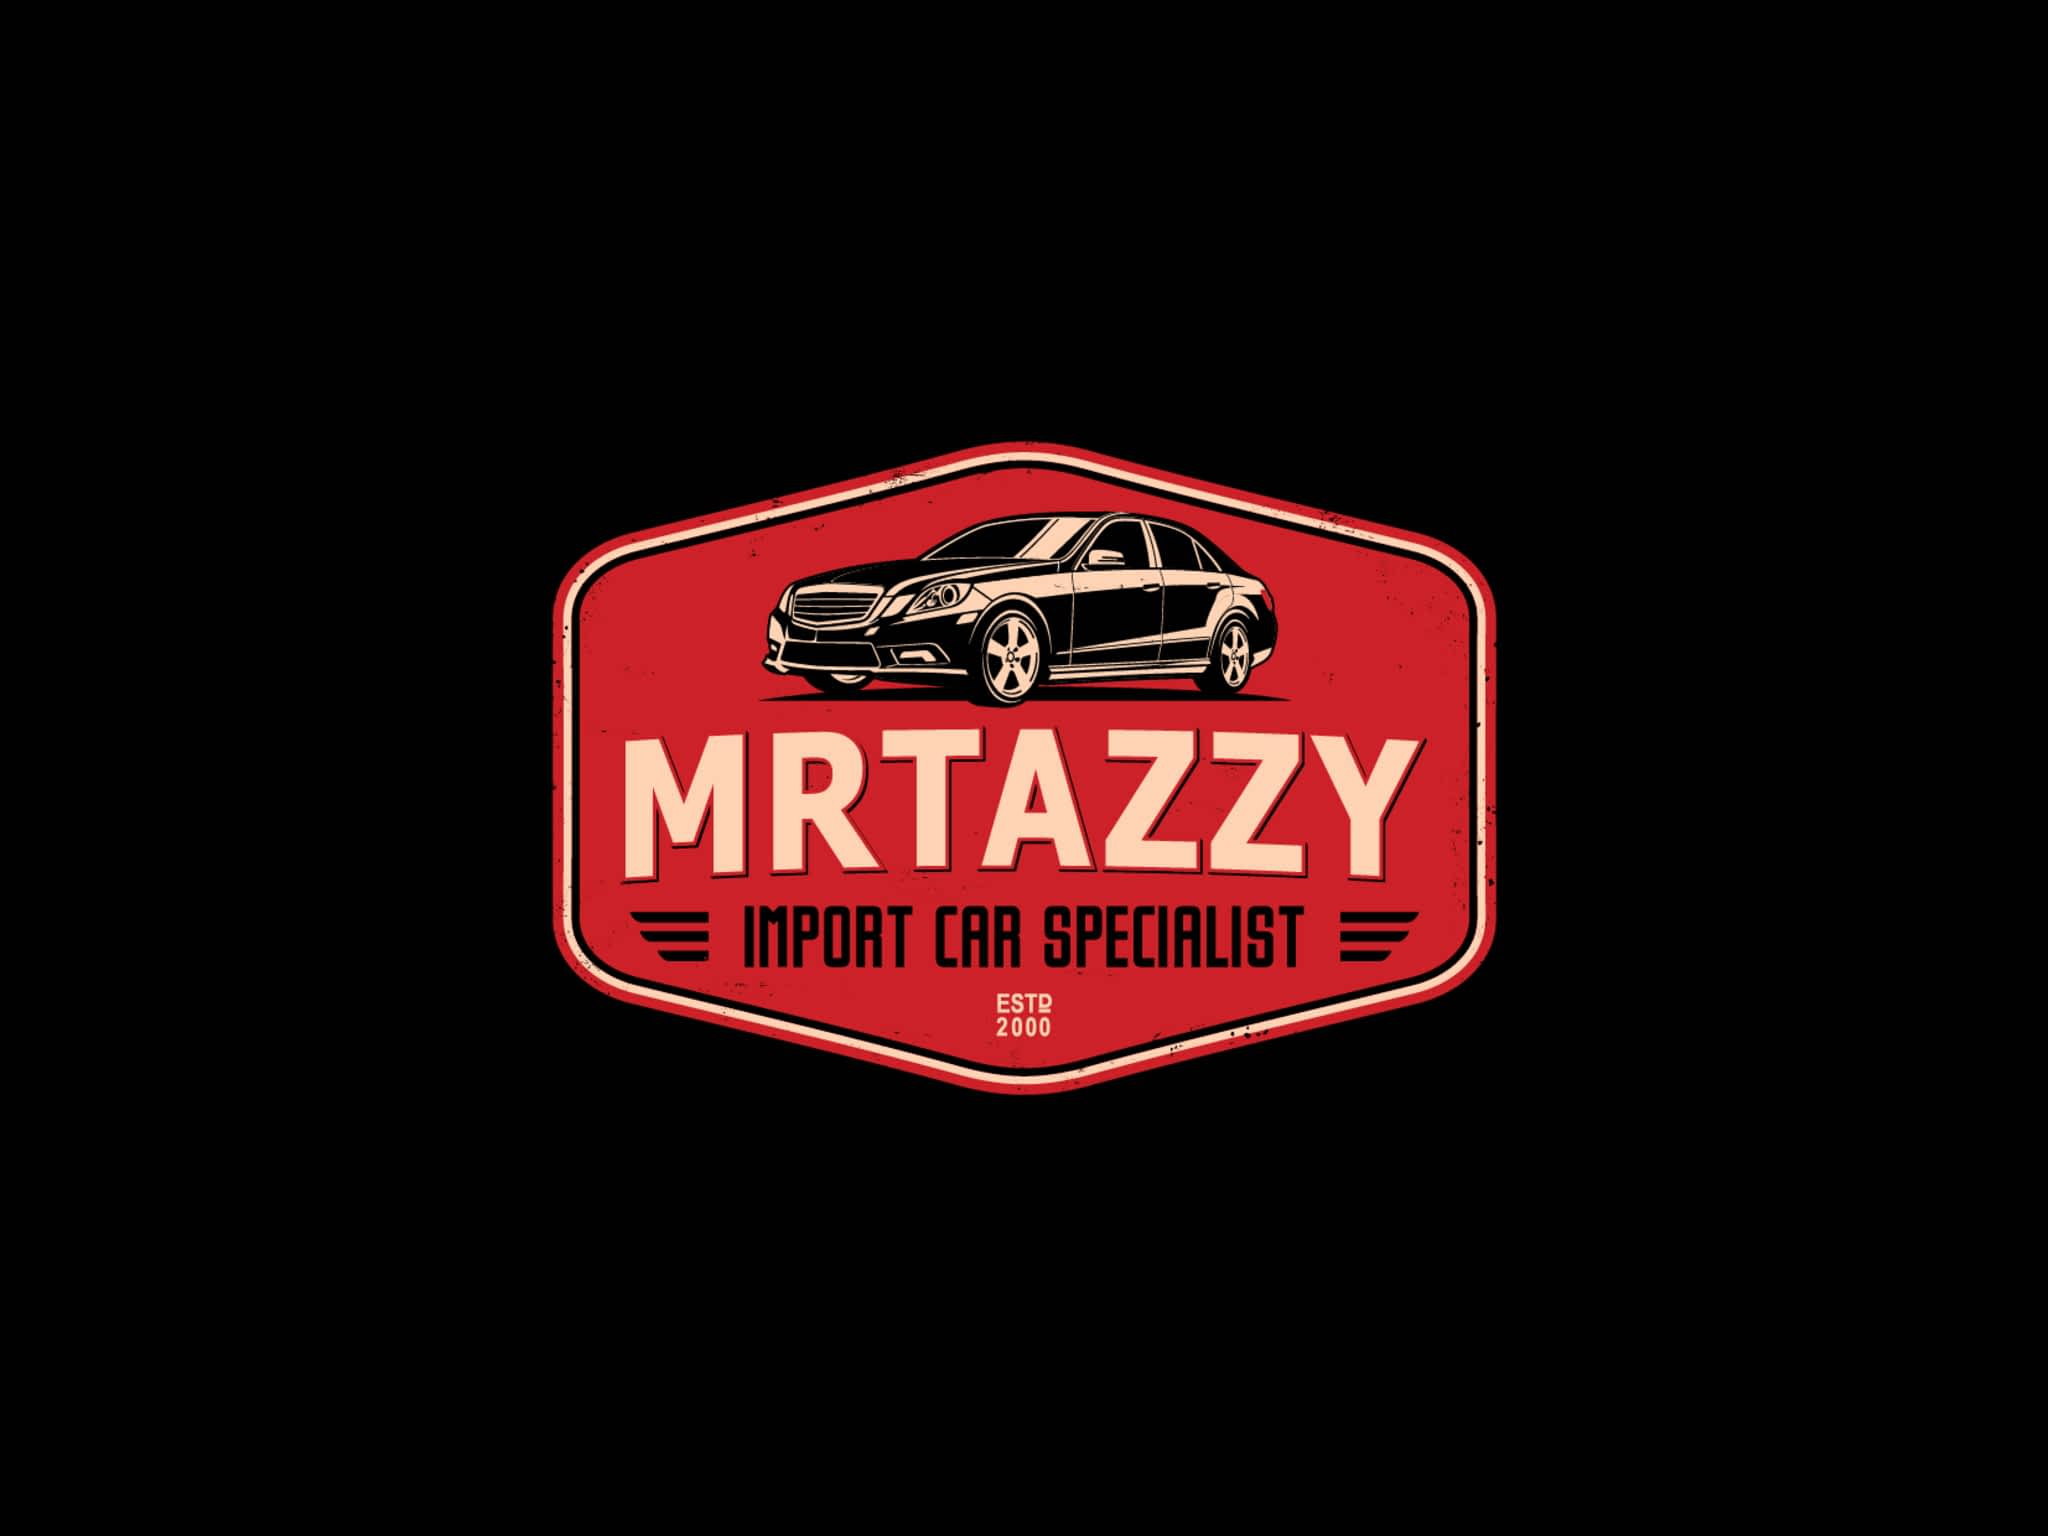 photo Mrtazzy Import Car Specialist